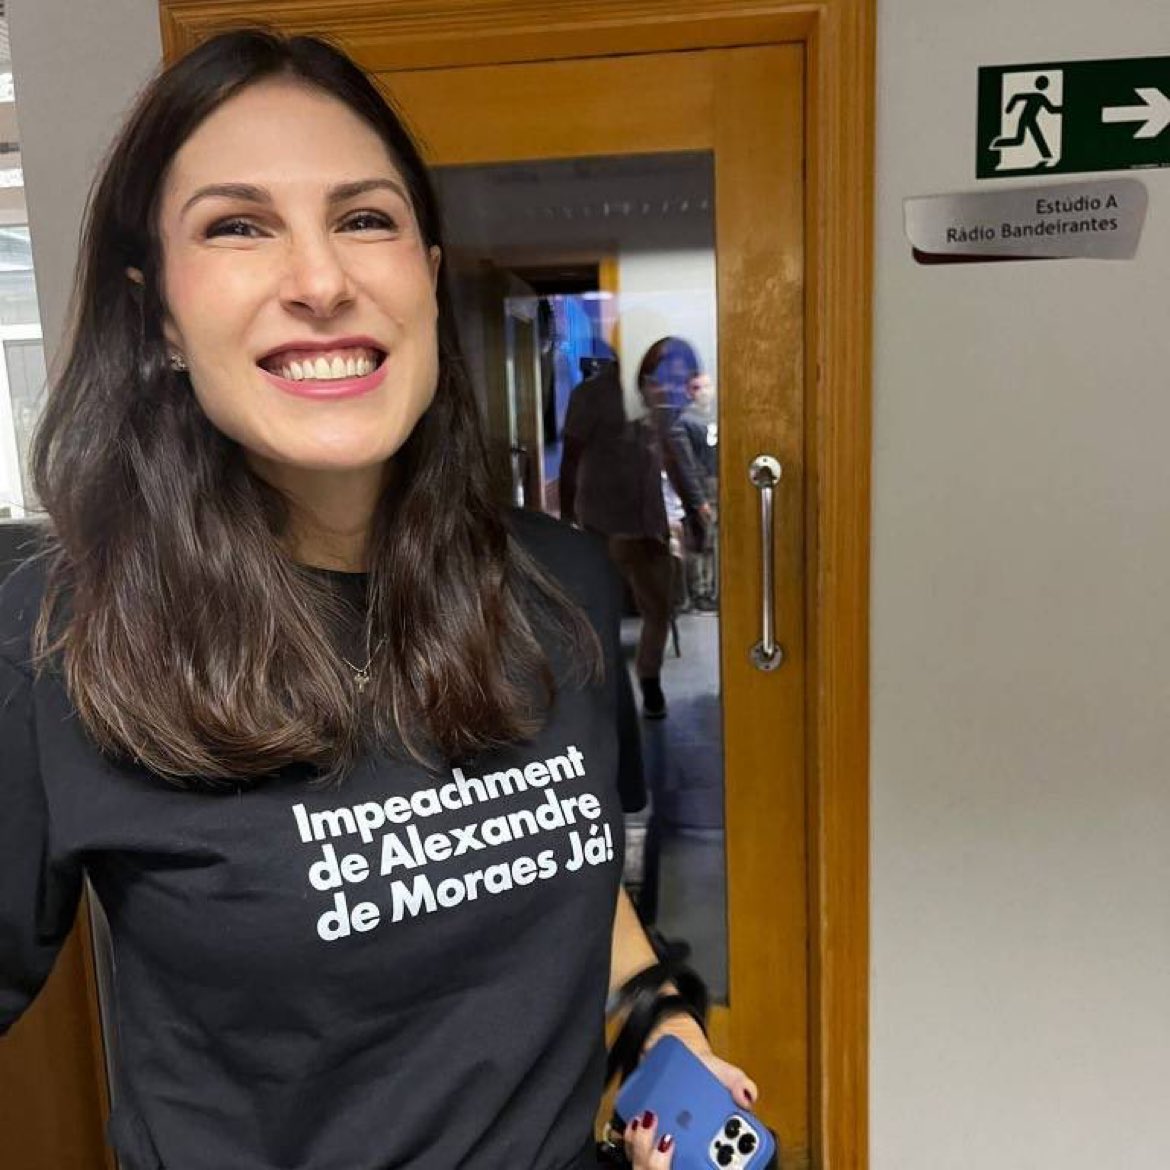 Pré-candidata do partido Novo à Prefeitura de SP, usou uma camiseta que pede impeachment de Alexandre de Moraes. GENTE ESCROTA! GENTE RIDÍCULA! 🤮